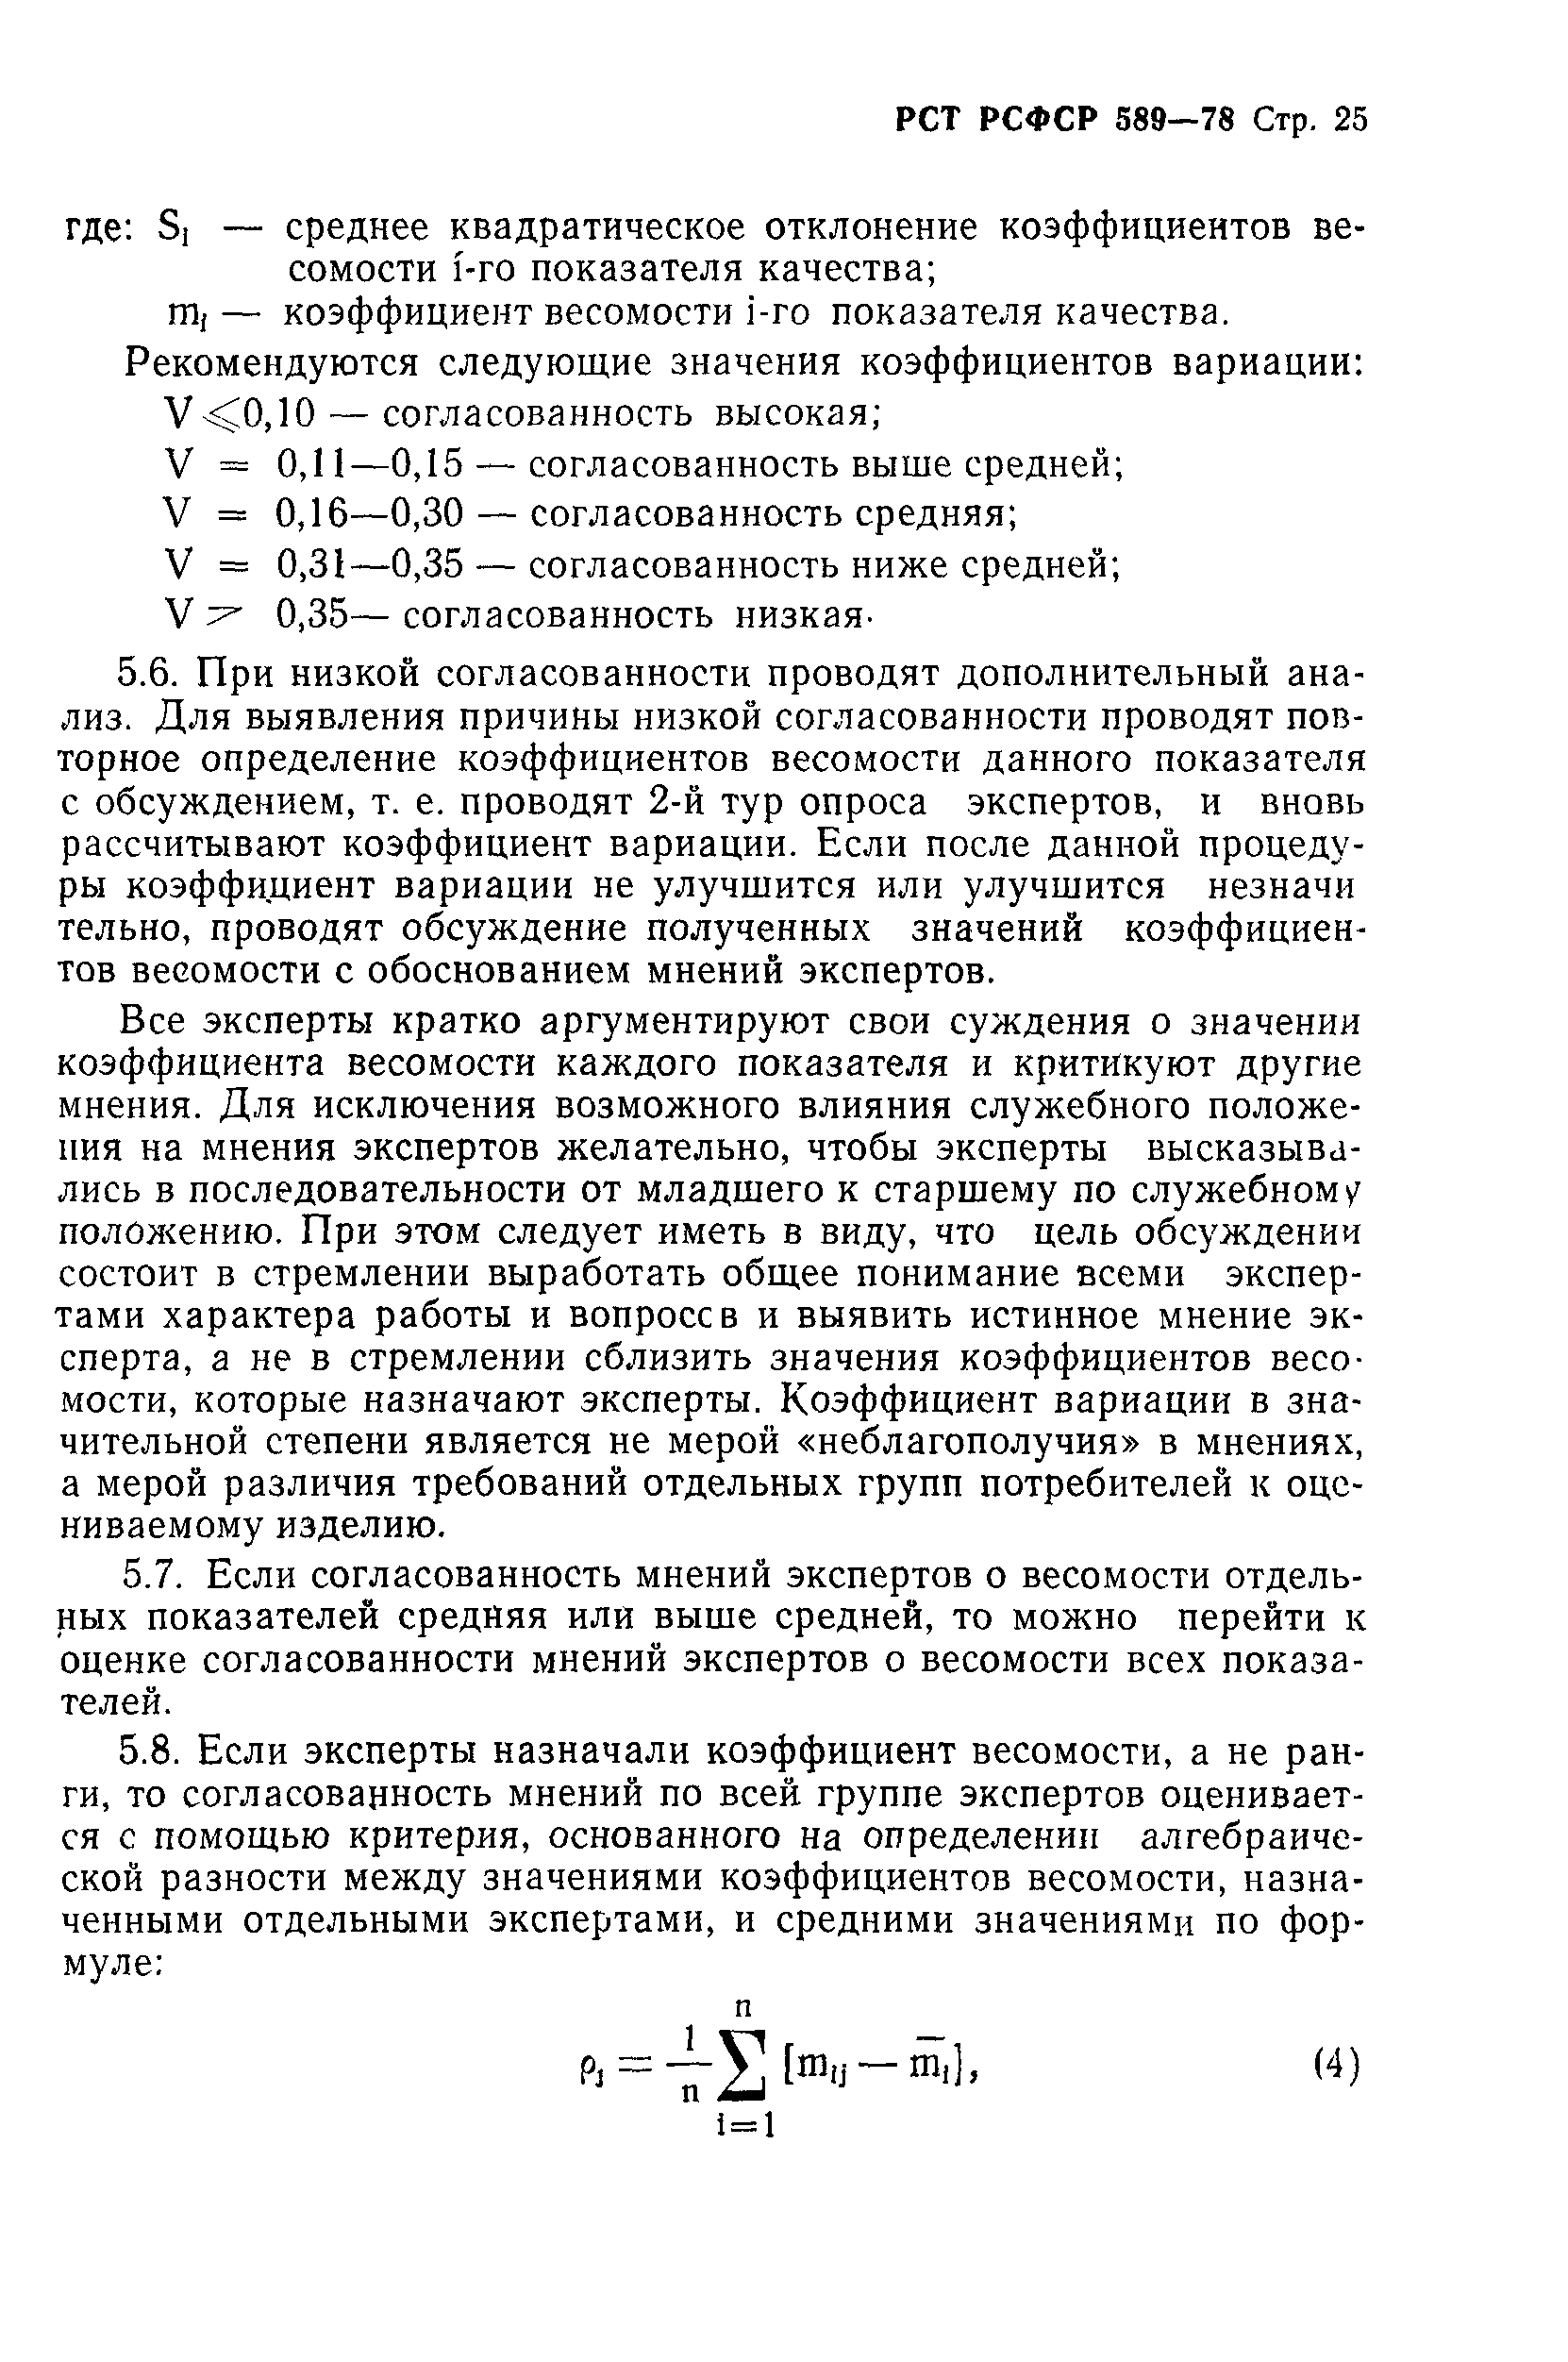 РСТ РСФСР 589-78